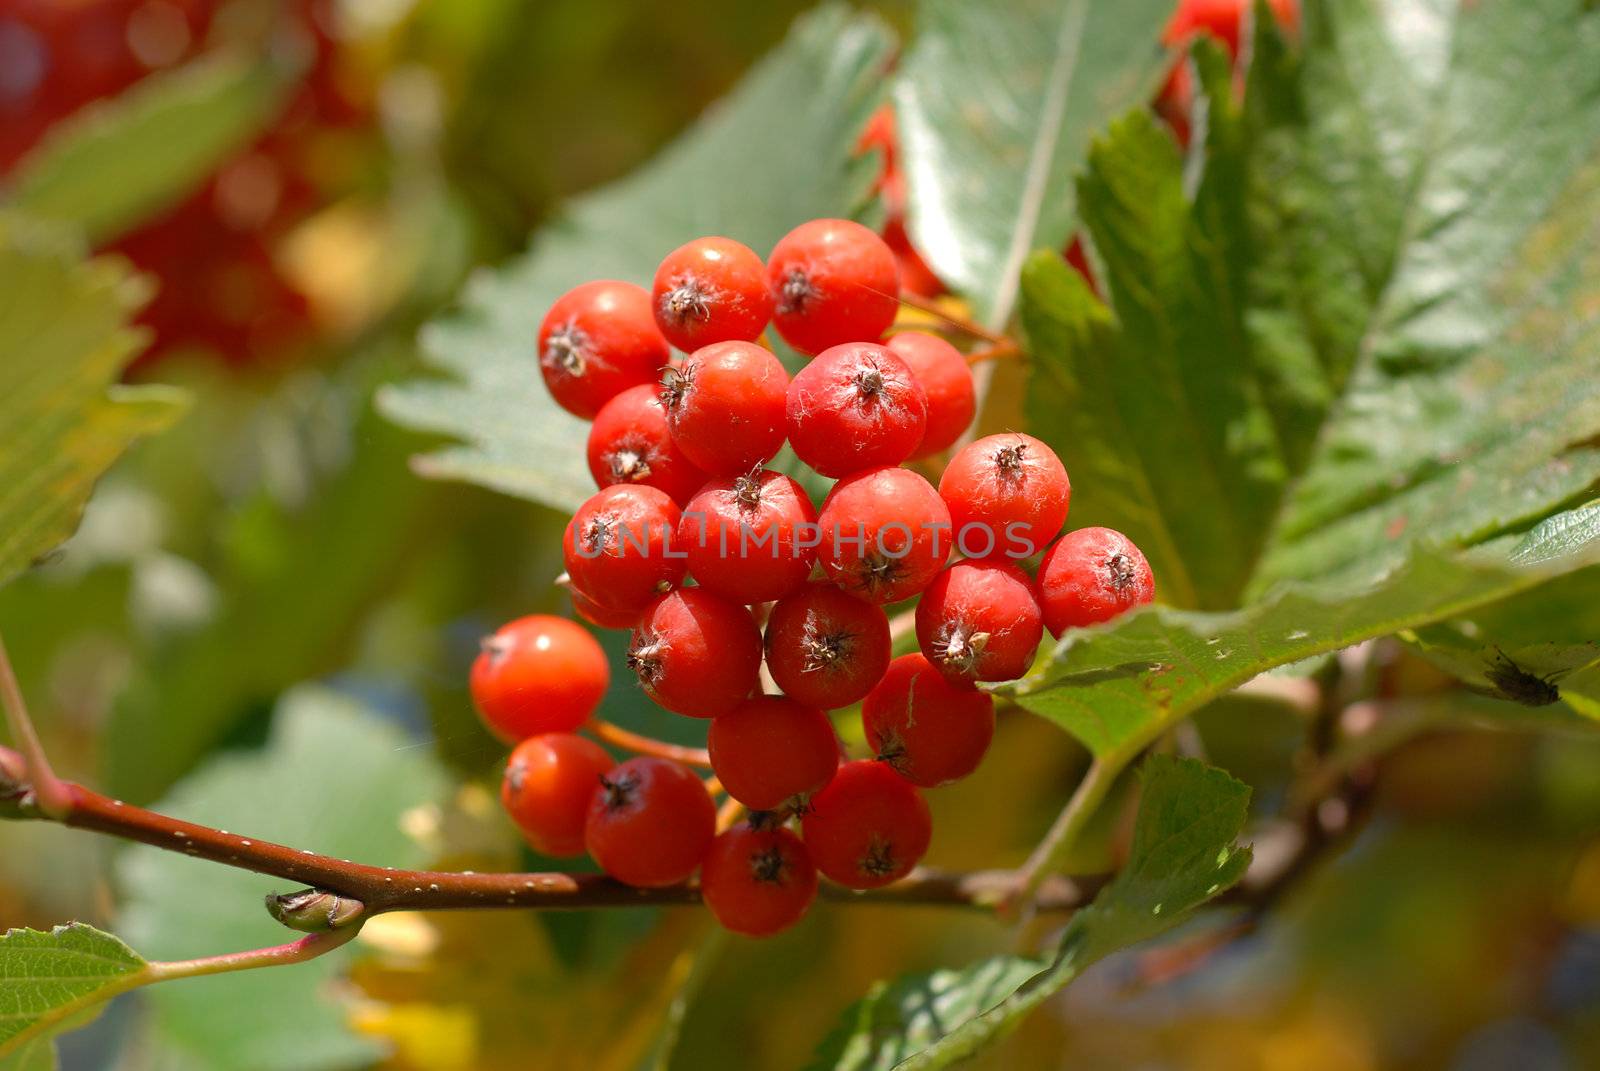 Rowan berries tree by wojciechkozlowski